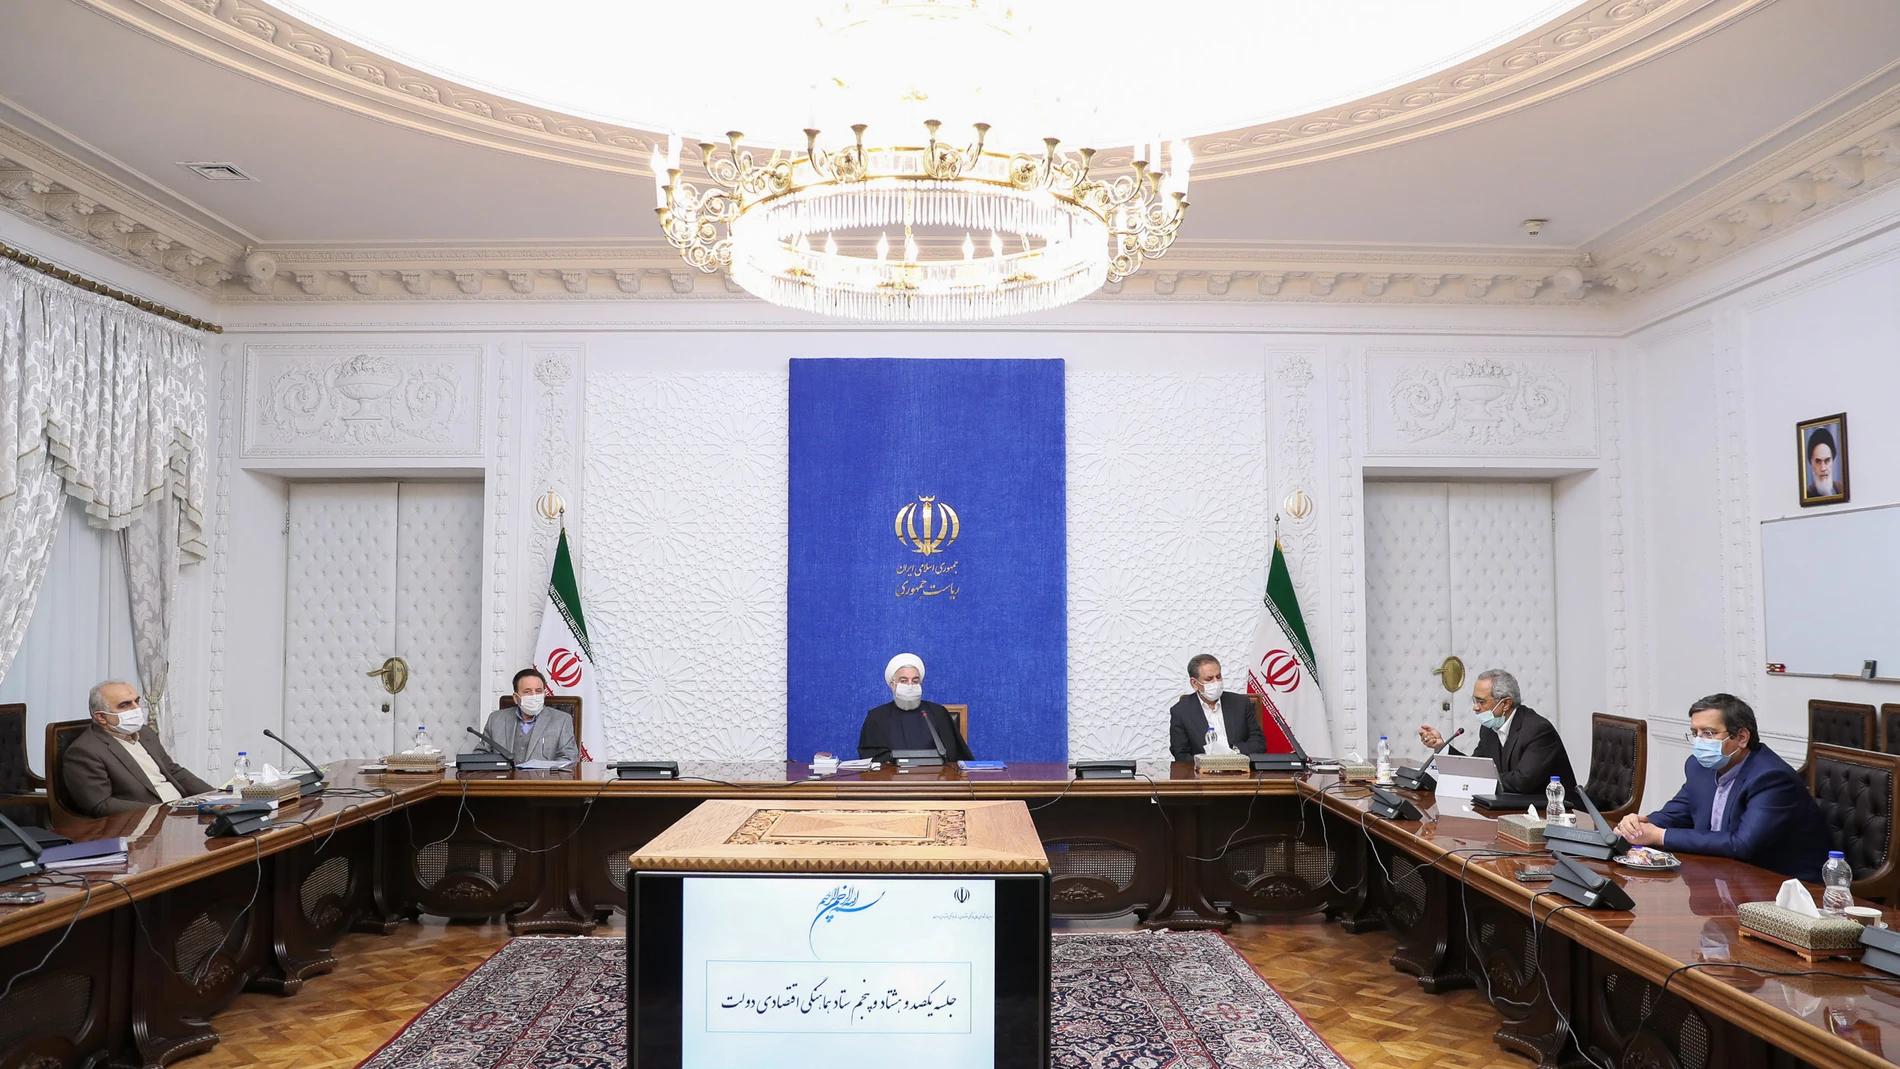 El presidente iraní Hasan Rohani (C) preside una reunión de la Junta de Coordinación Económica del gabinete en Teherán. Foto; Iranian Presidency/dpa